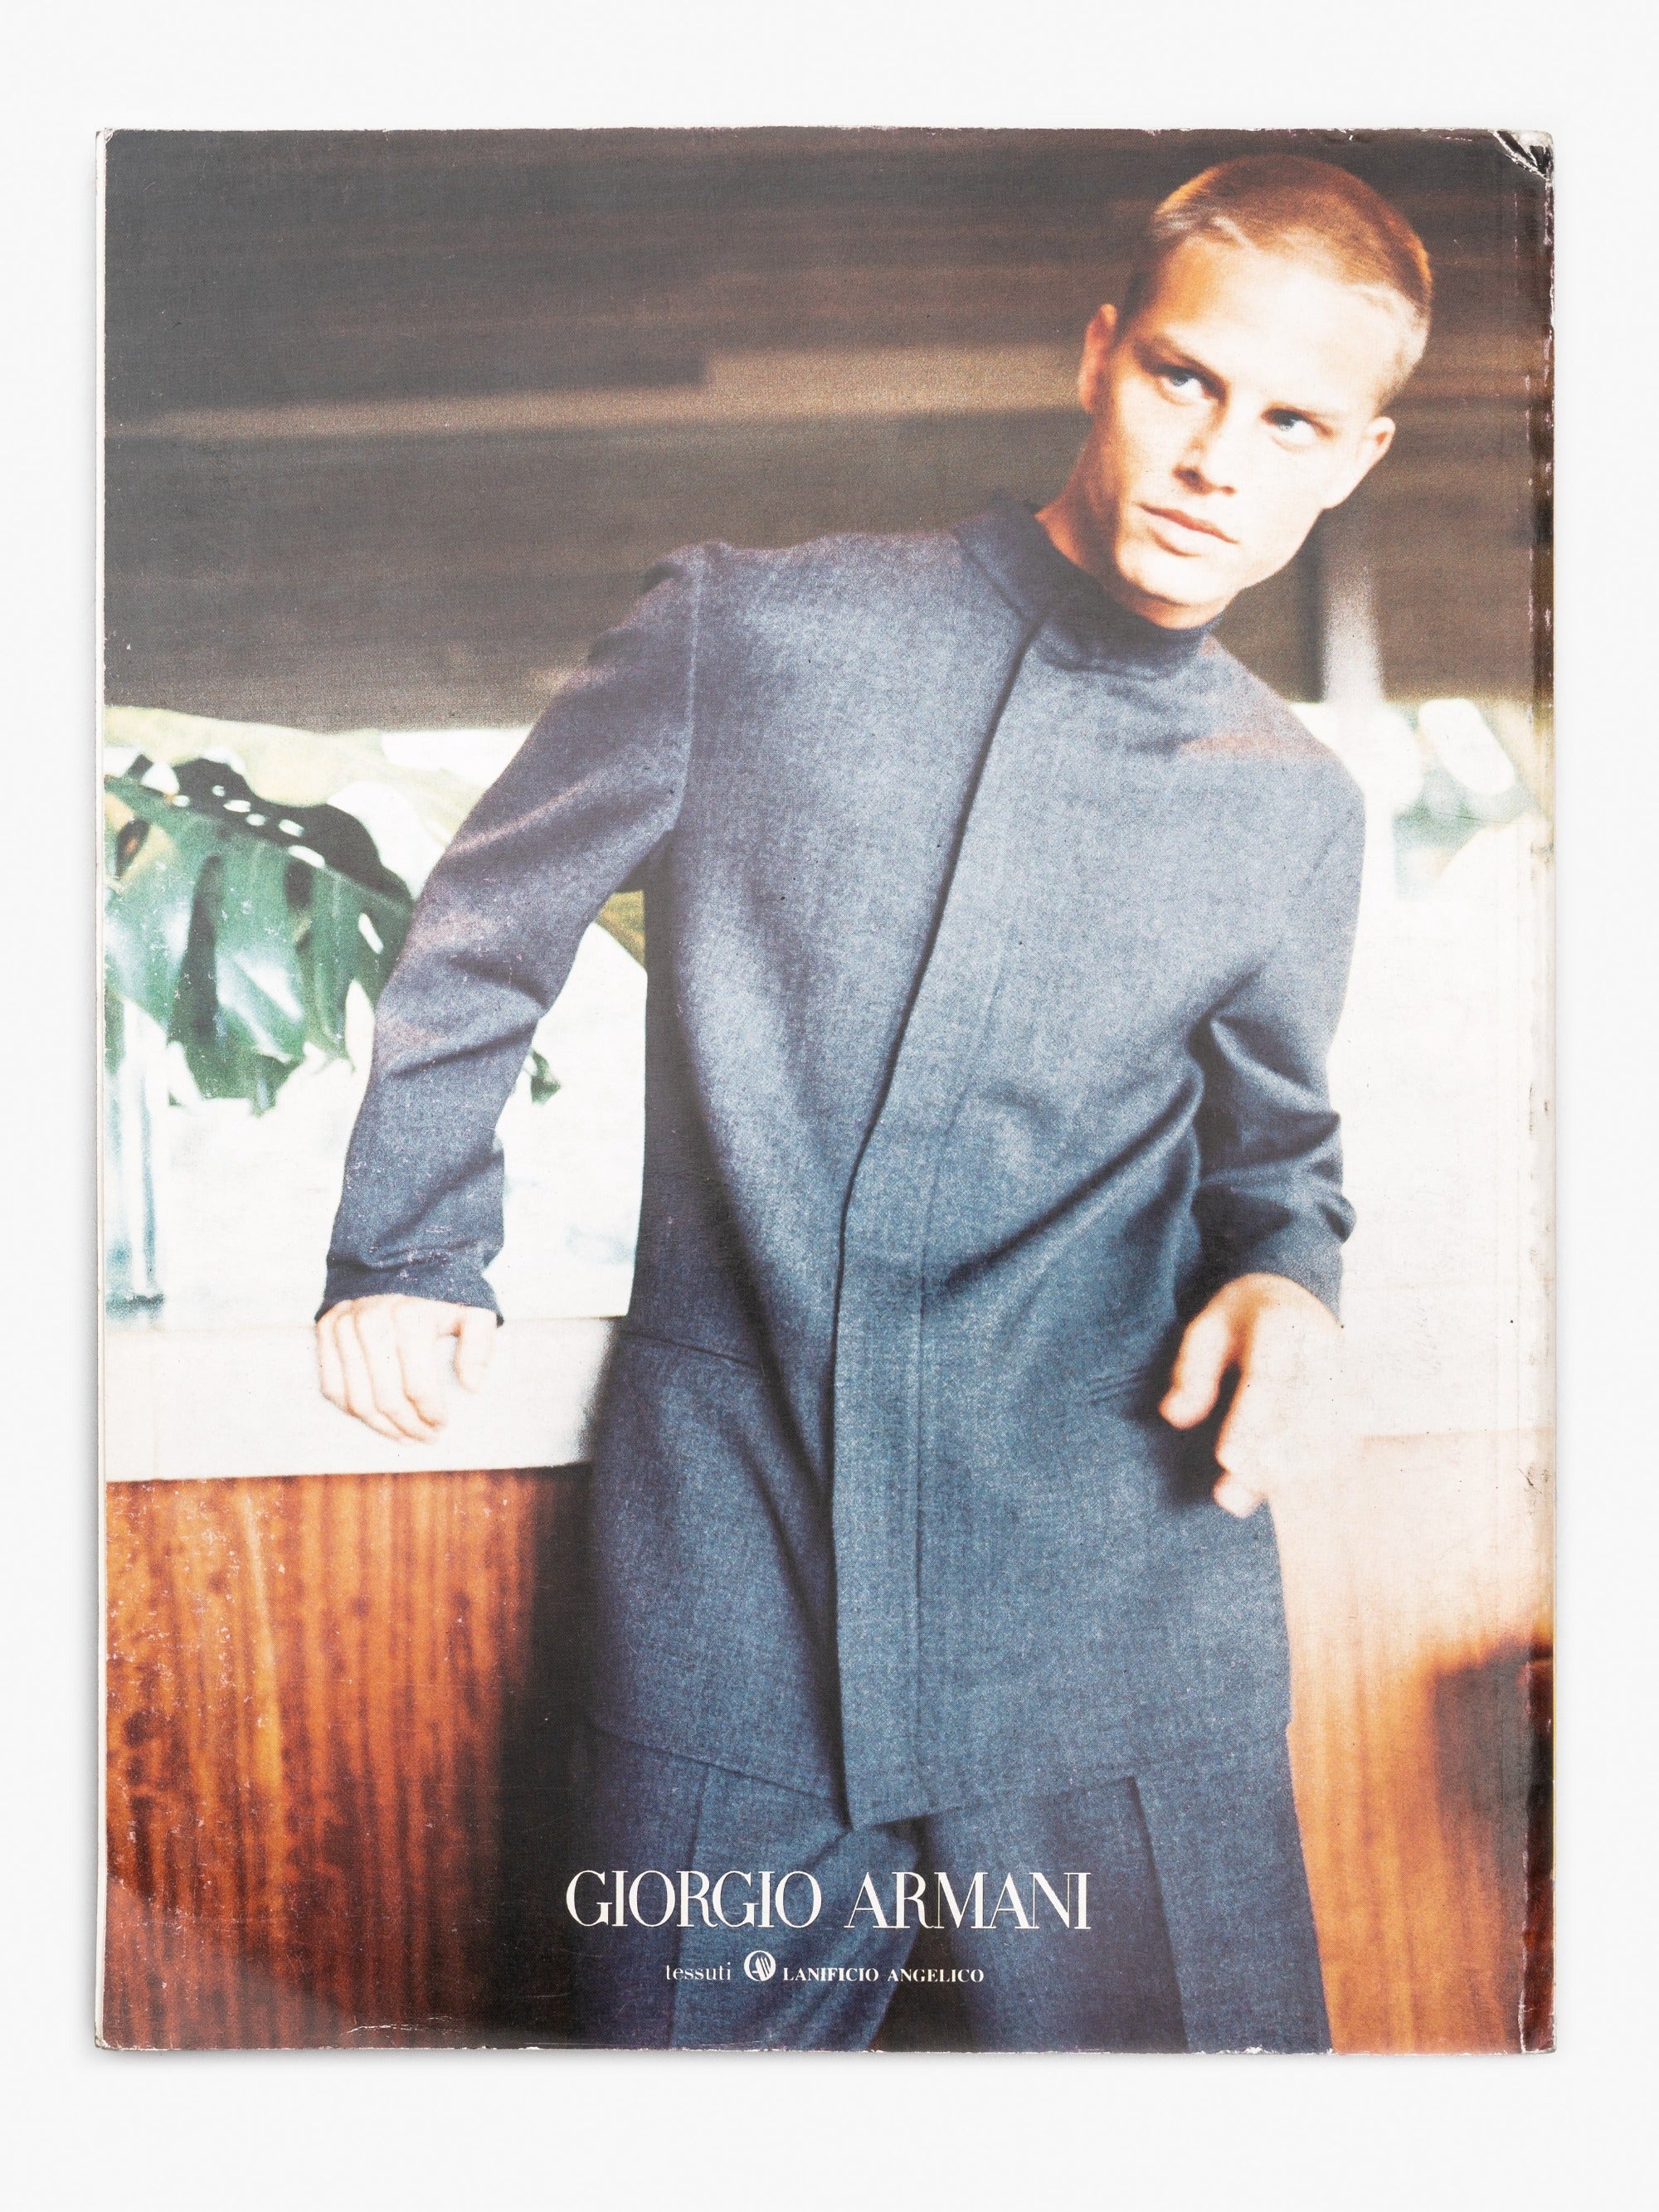 L'Uomo Vogue October 1999 - Algo Bazaar